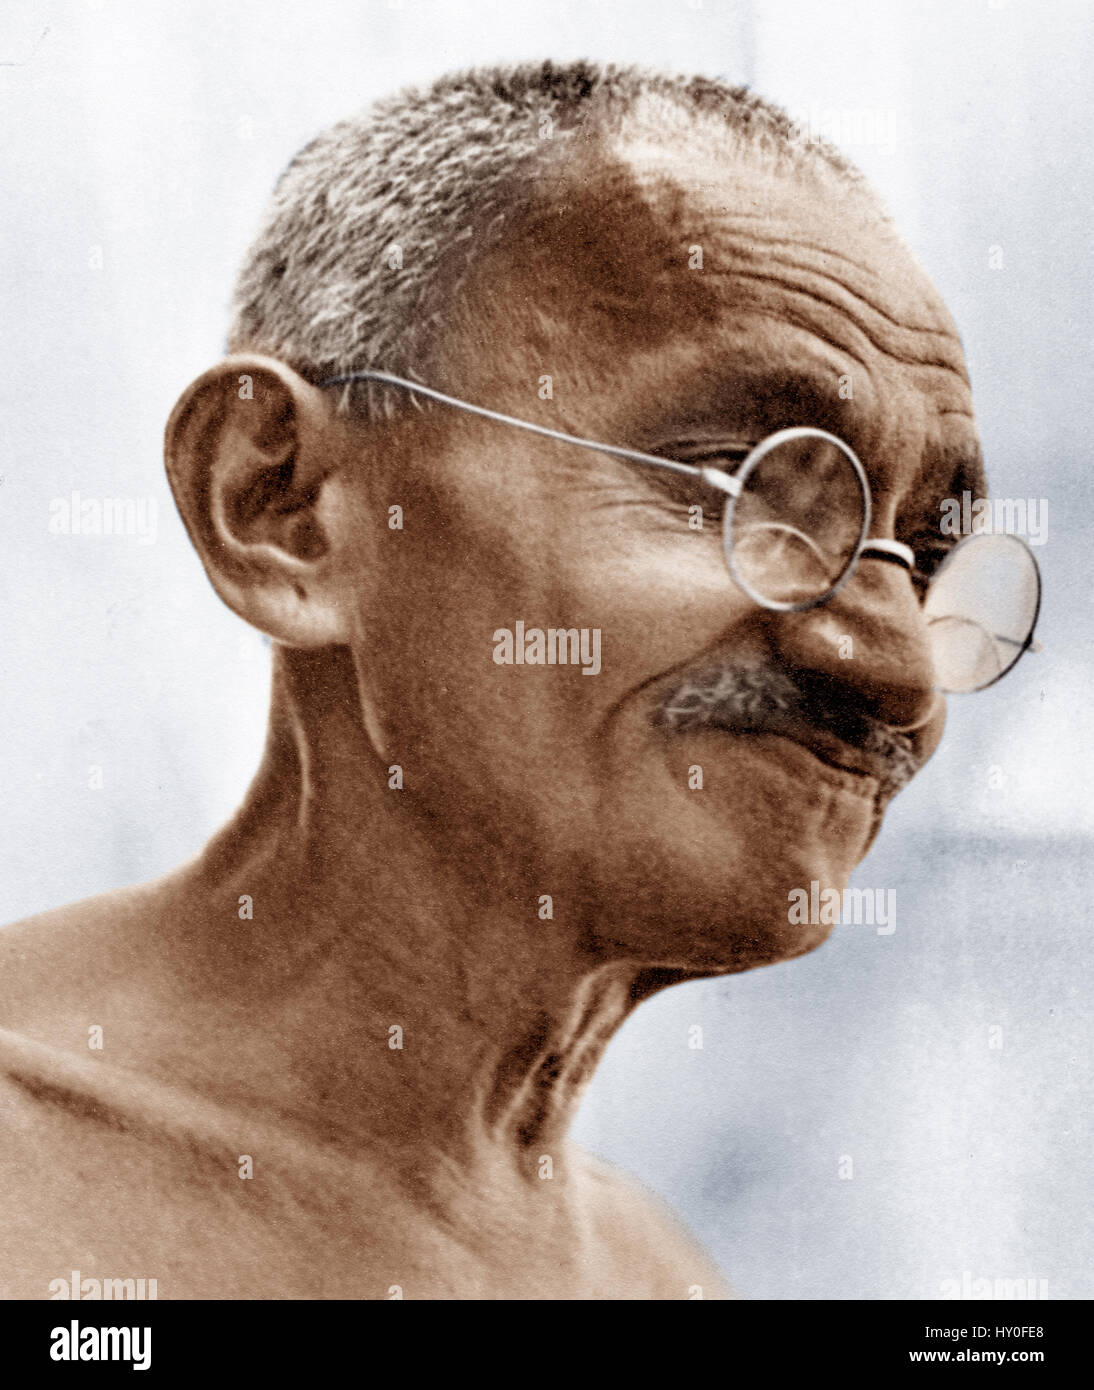 Indische Freiheitskämpfer, Mahatma Gandhi, Indien, Asien, 1930 Stockfoto